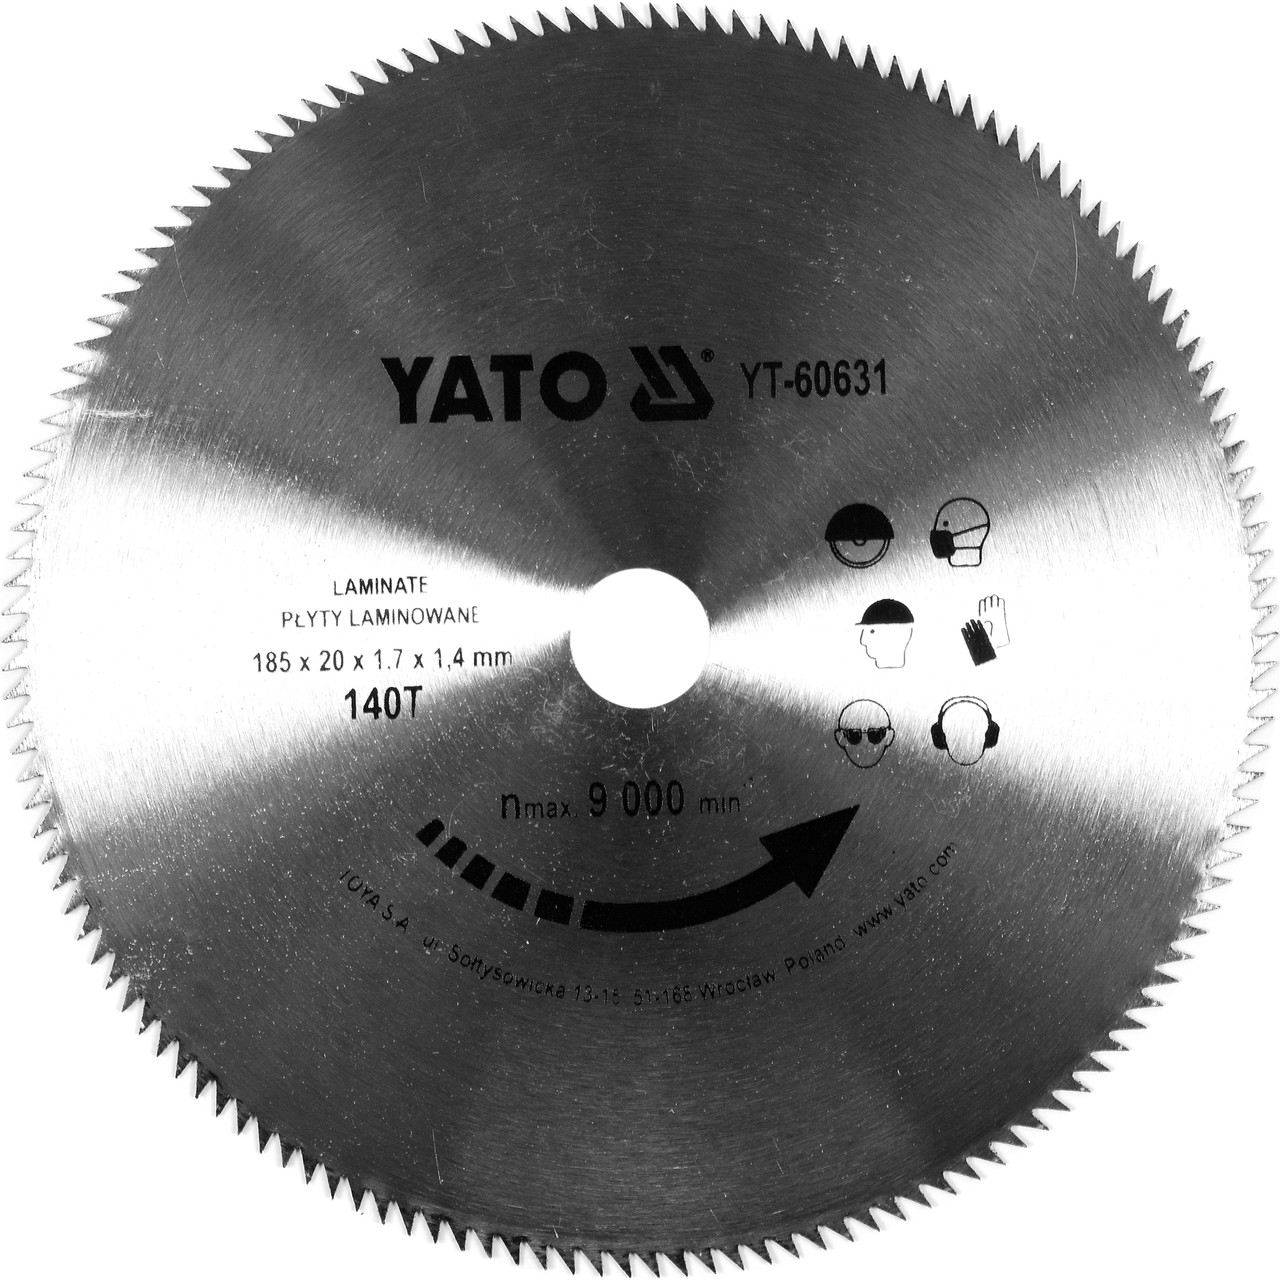 Диск пильный по ламинату 185/20 140T "Yato" YT-60631